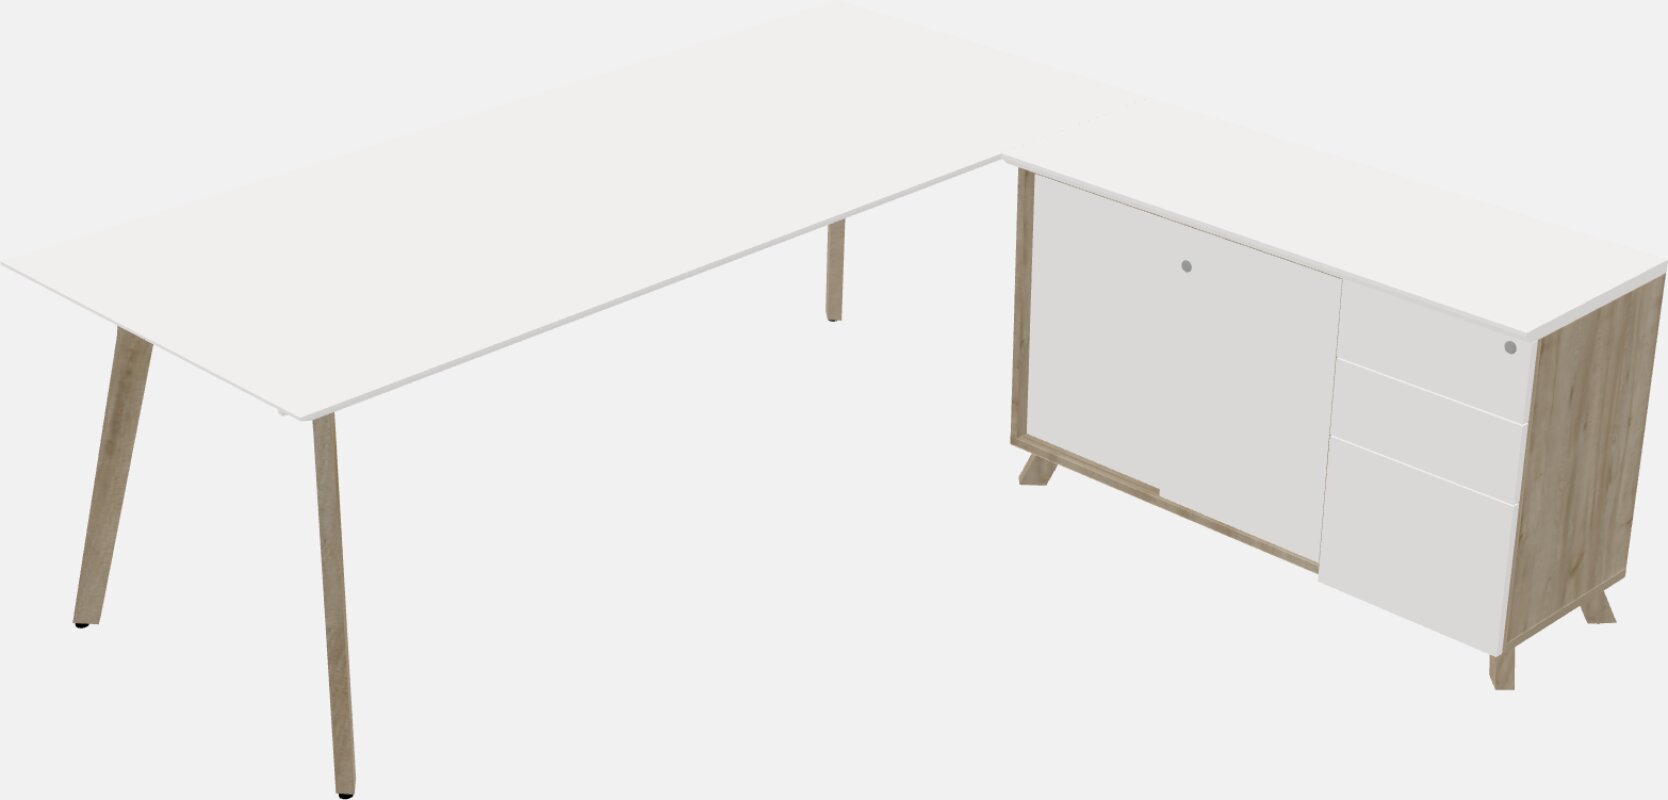 Modernong executive l-shaped desk - solid wood frame